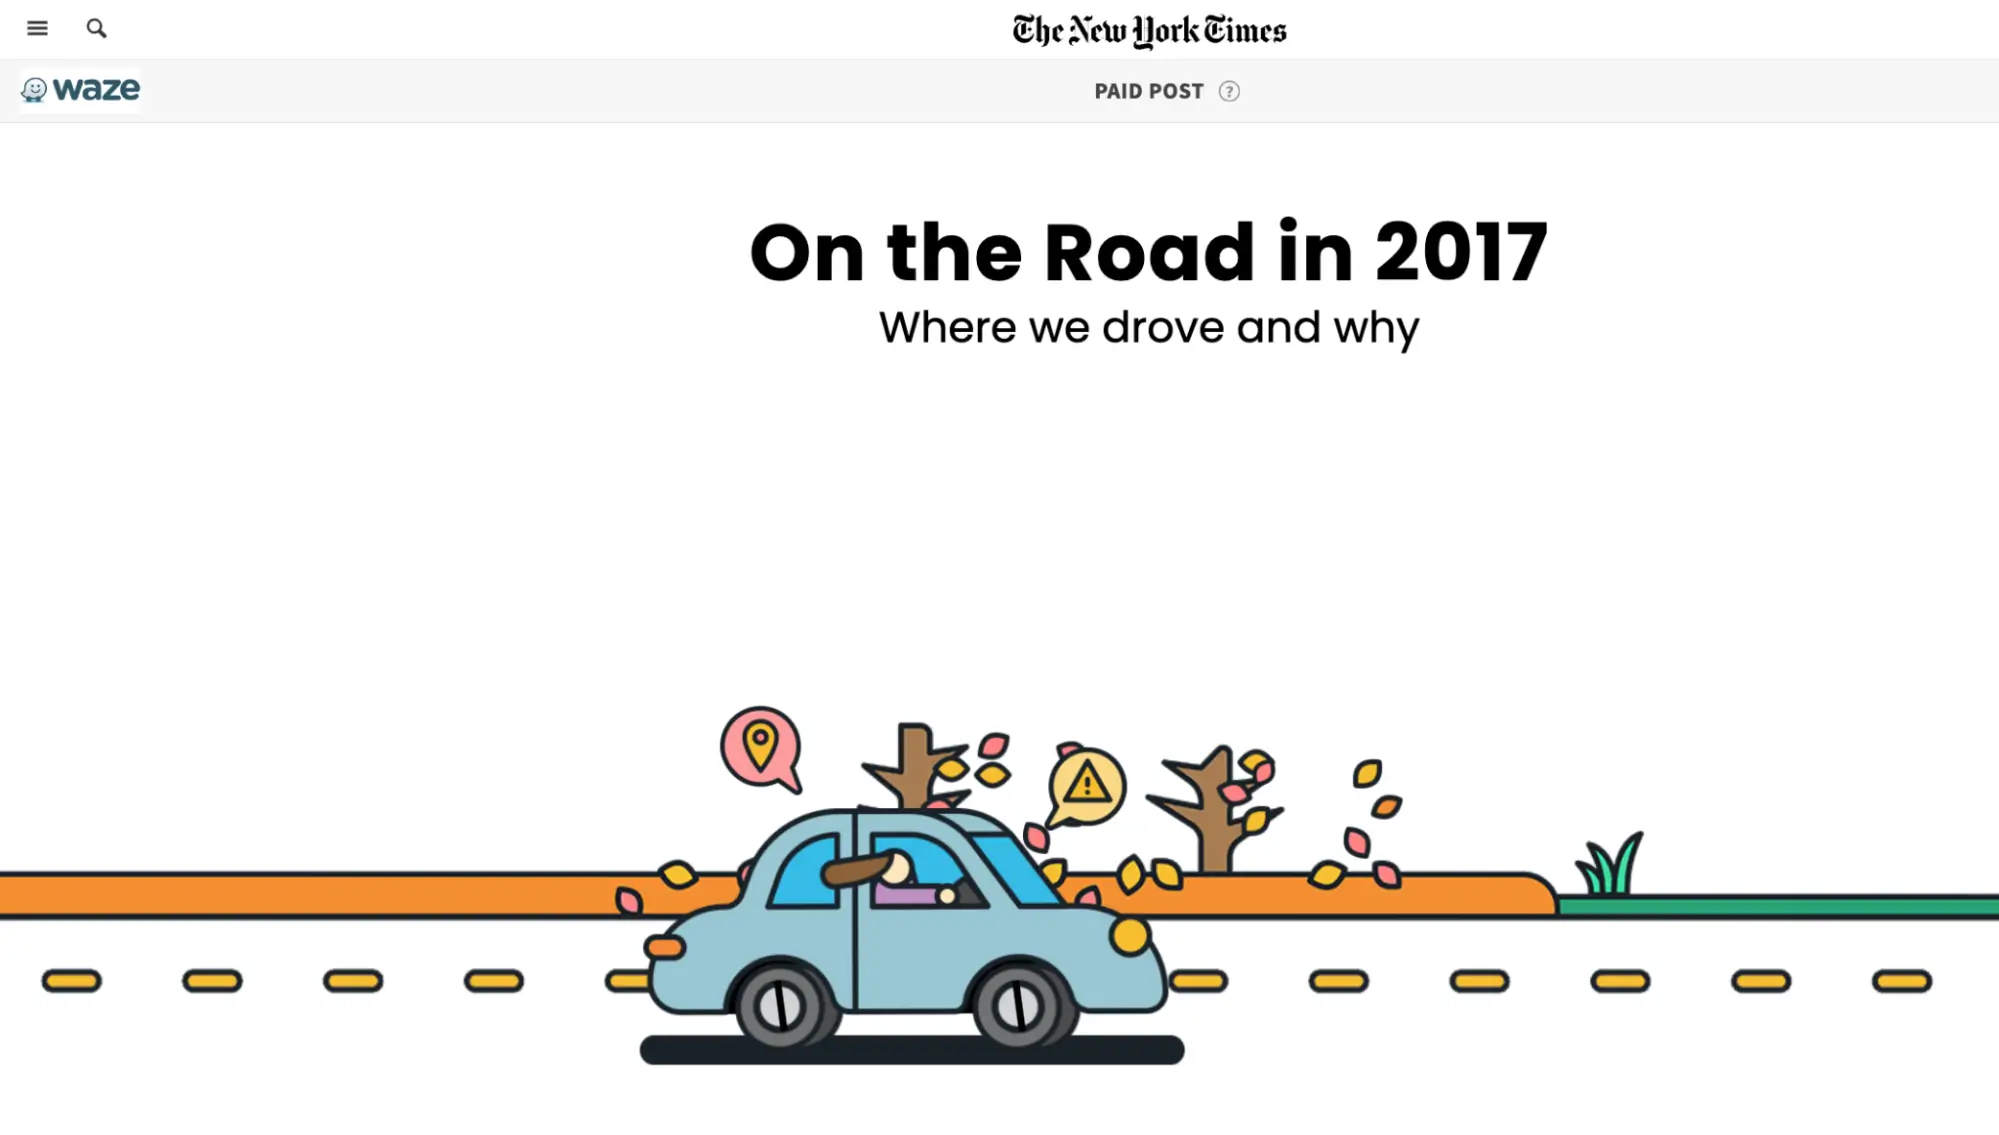 Dieses Bild zeigt Wazes „On the Road“-Kampagne, die in Zusammenarbeit mit der New York Times erstellt wurde und interaktive Inhalte basierend auf echten App-Daten bietet. Ziel der Kampagne war es, treibende Trends und die Gründe dafür aufzudecken und über eine interaktive Seite mit einprägsamen Grafiken informative und teilbare Inhalte anzubieten.